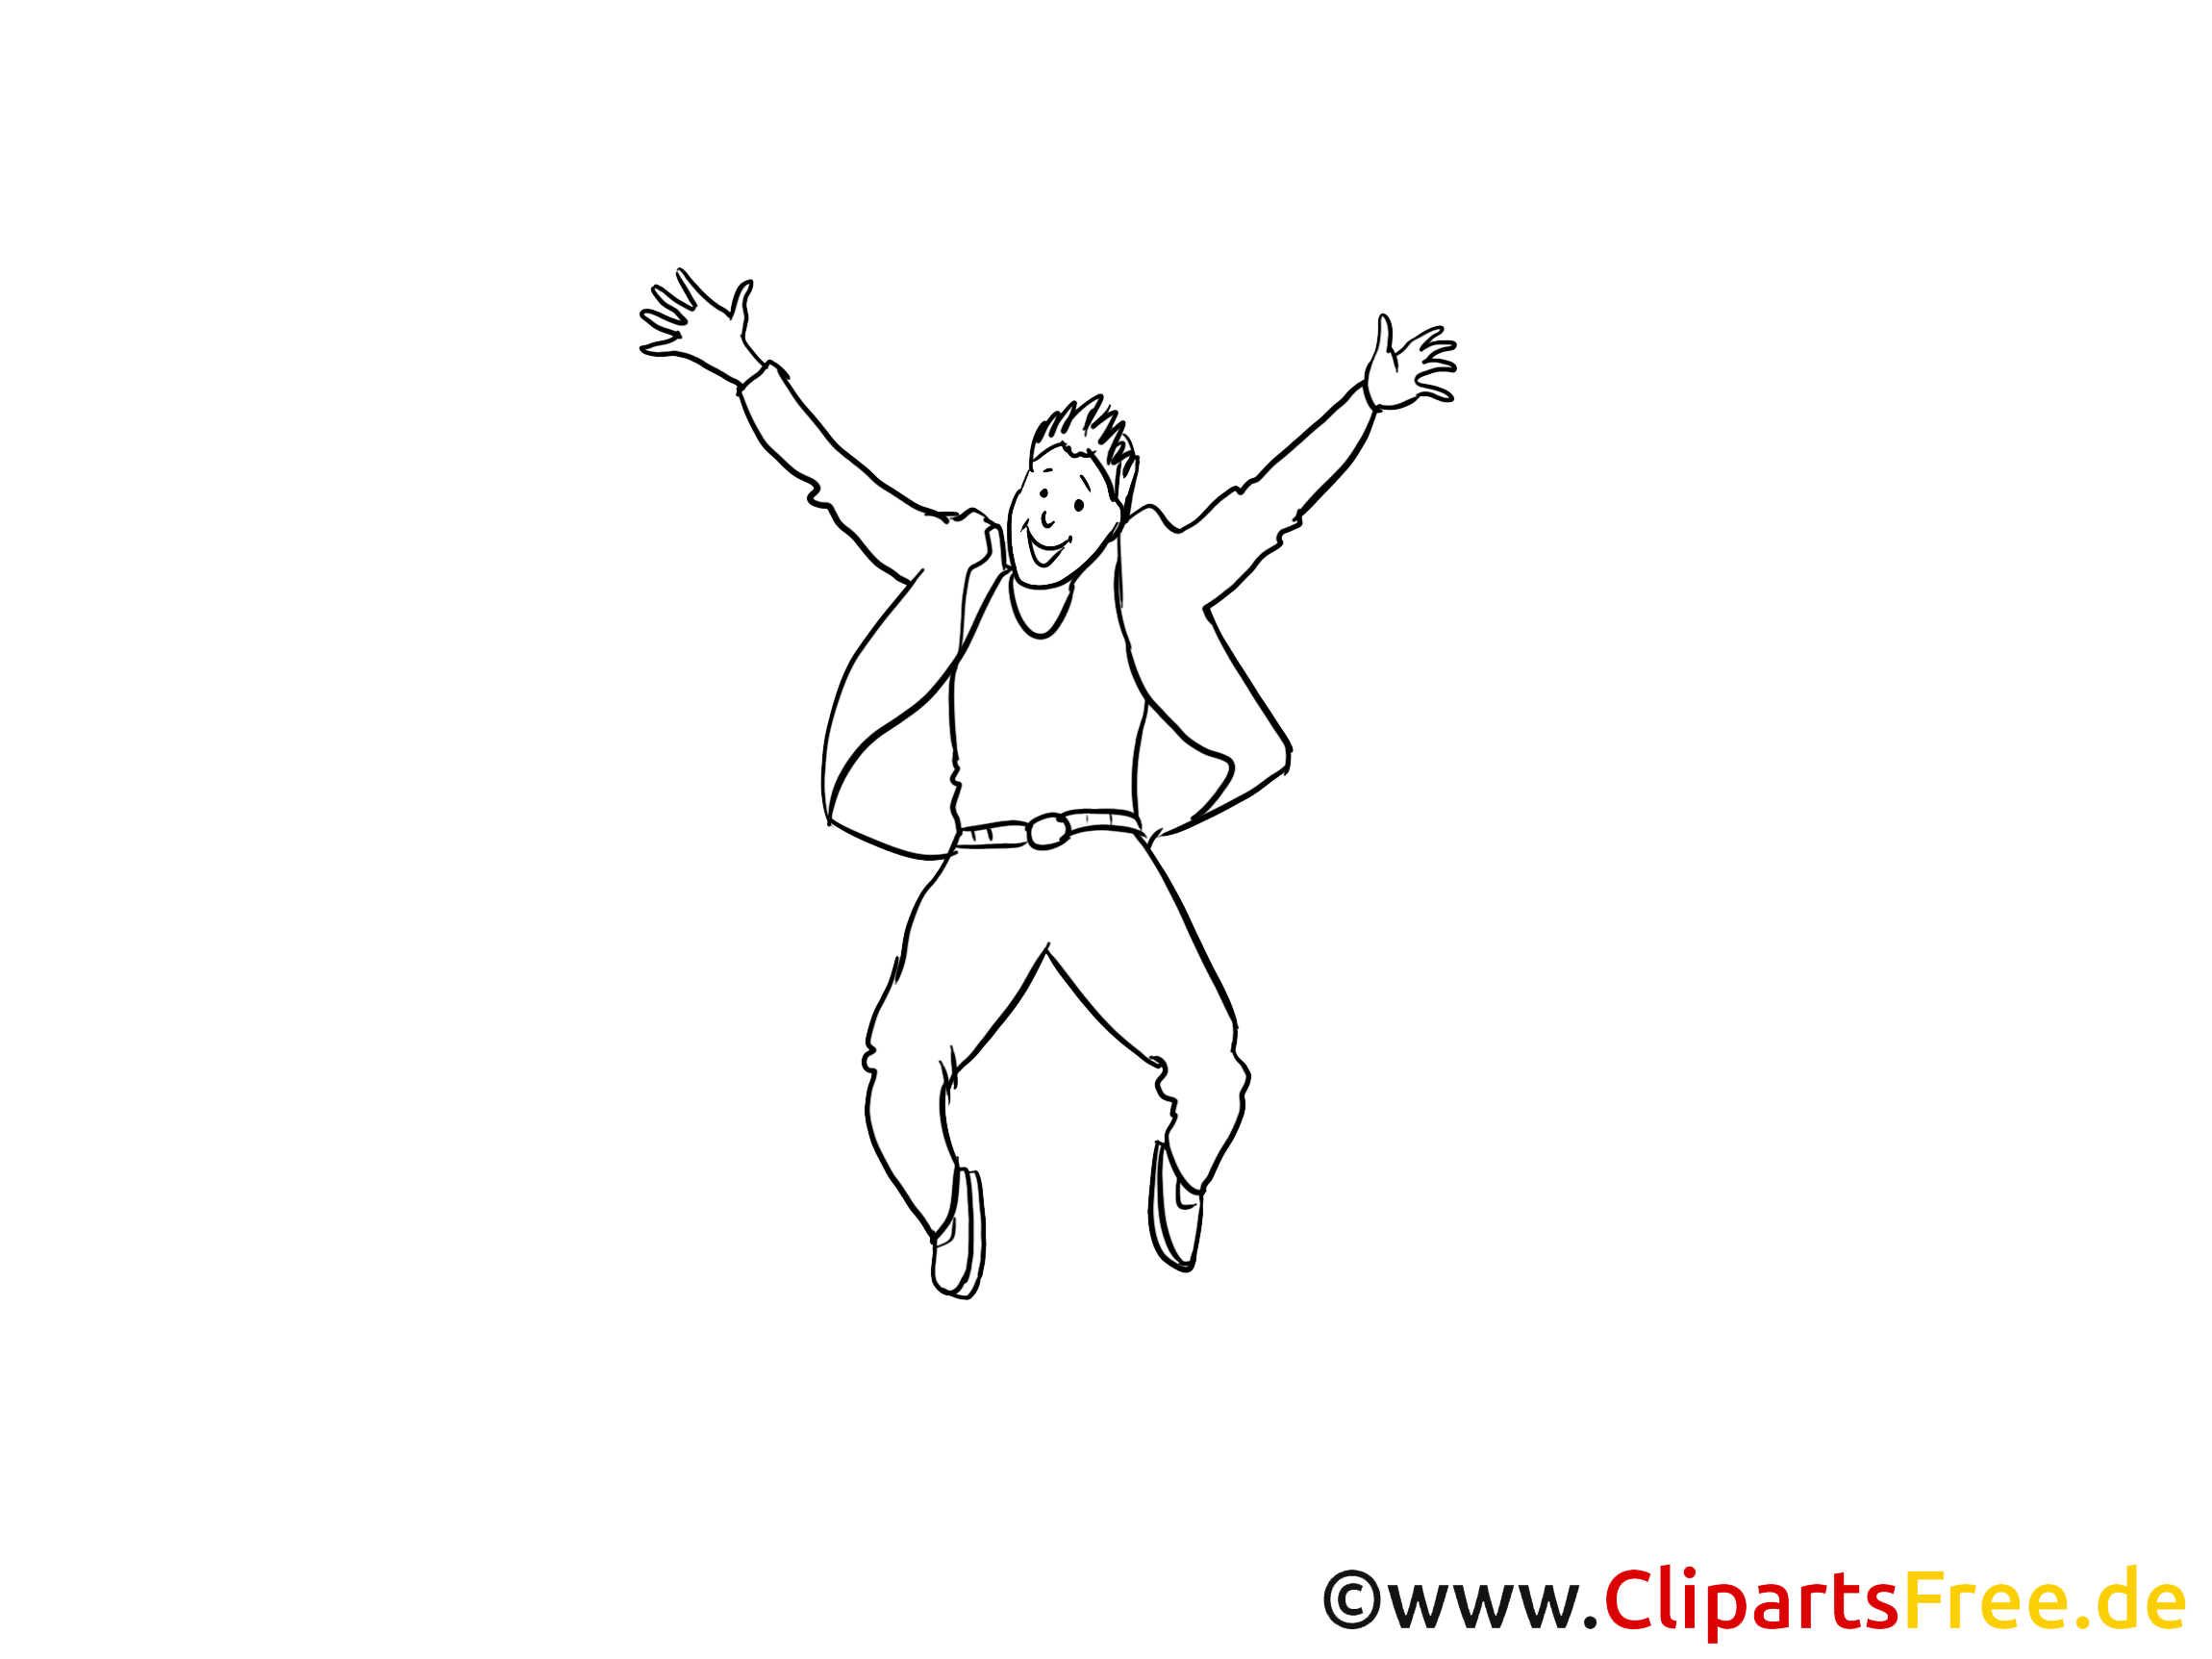 Coloriage homme mardi gras illustration à télécharger